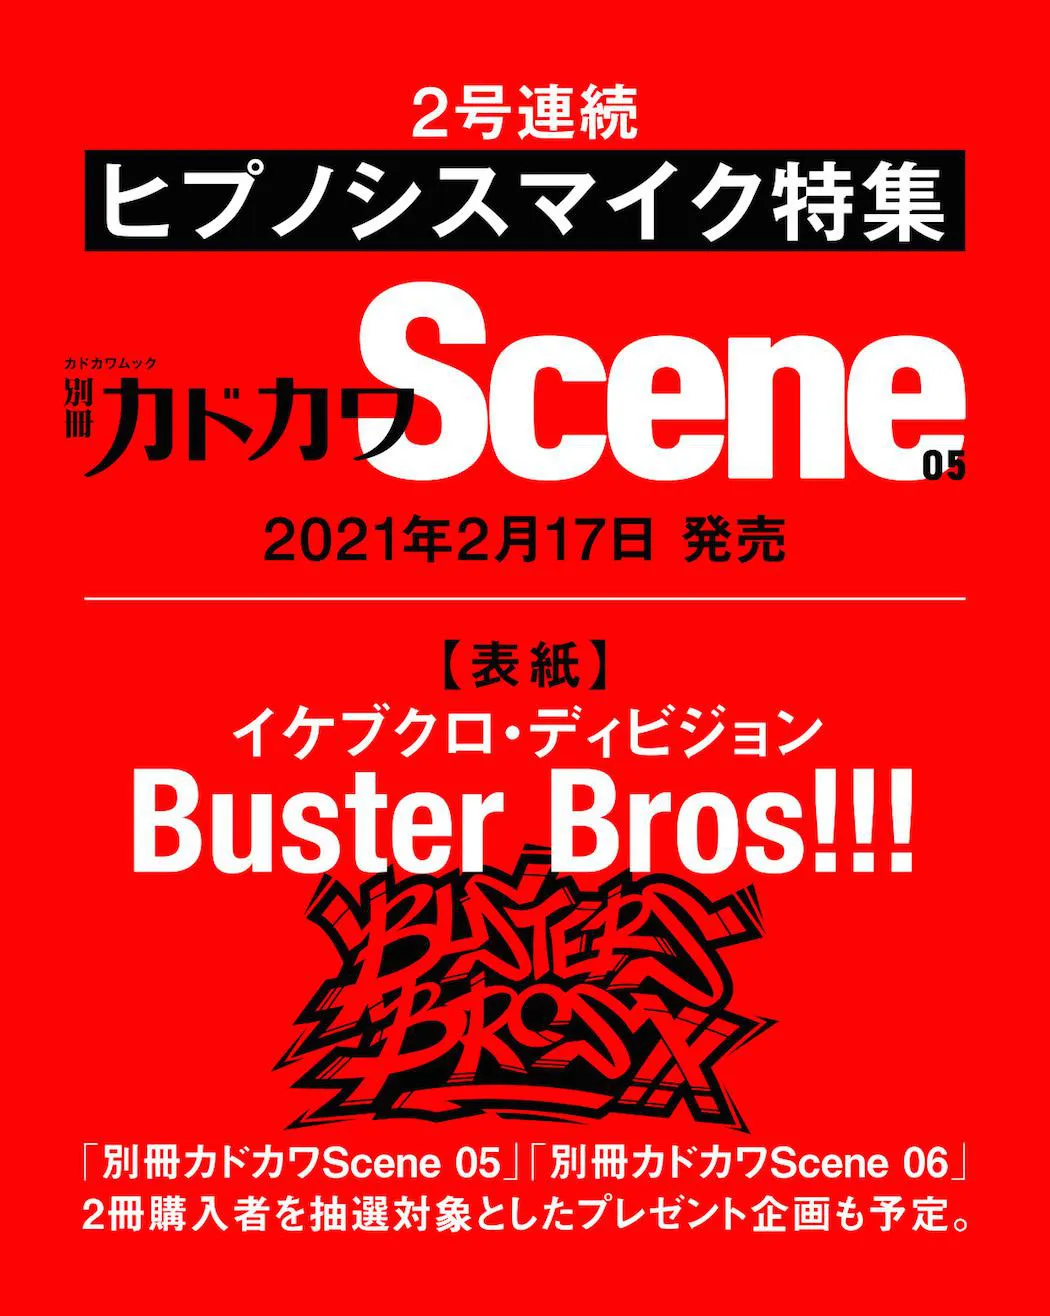 「別冊カドカワScene 05」は、イケブクロ・ディビジョン／Buster Bros!!!が表紙を飾る